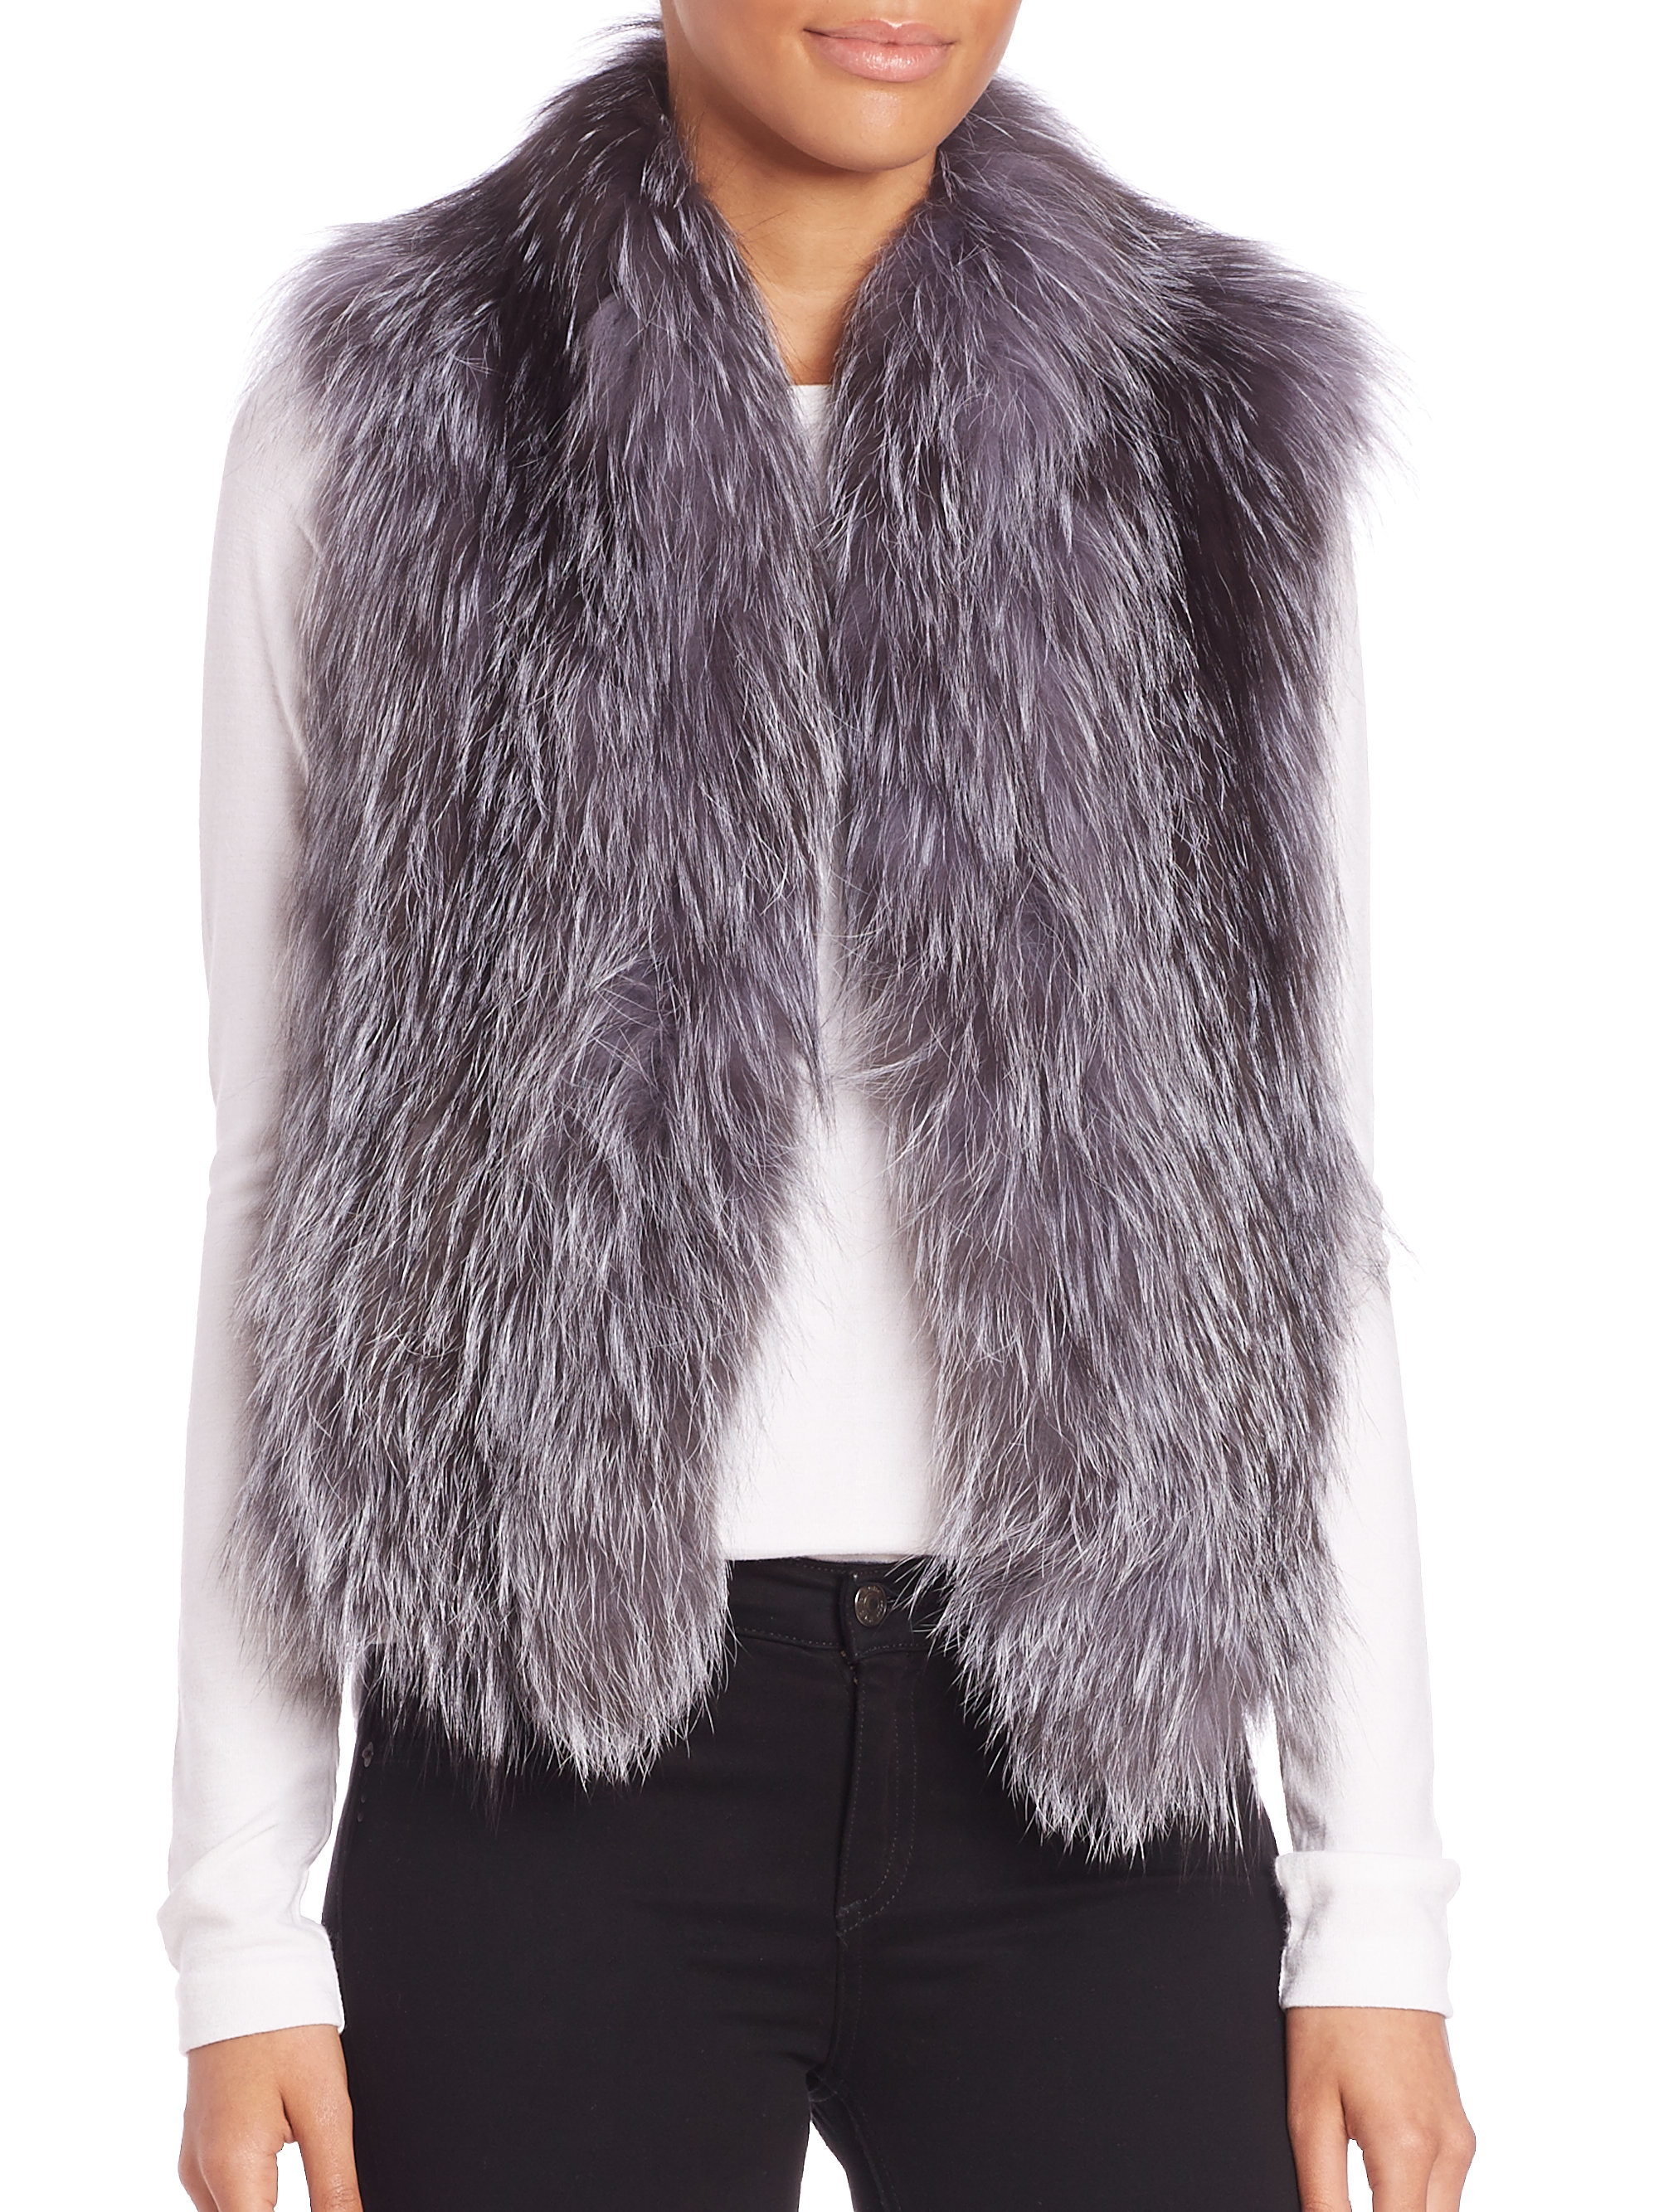 Lyst - June Fox Fur Vest in Gray